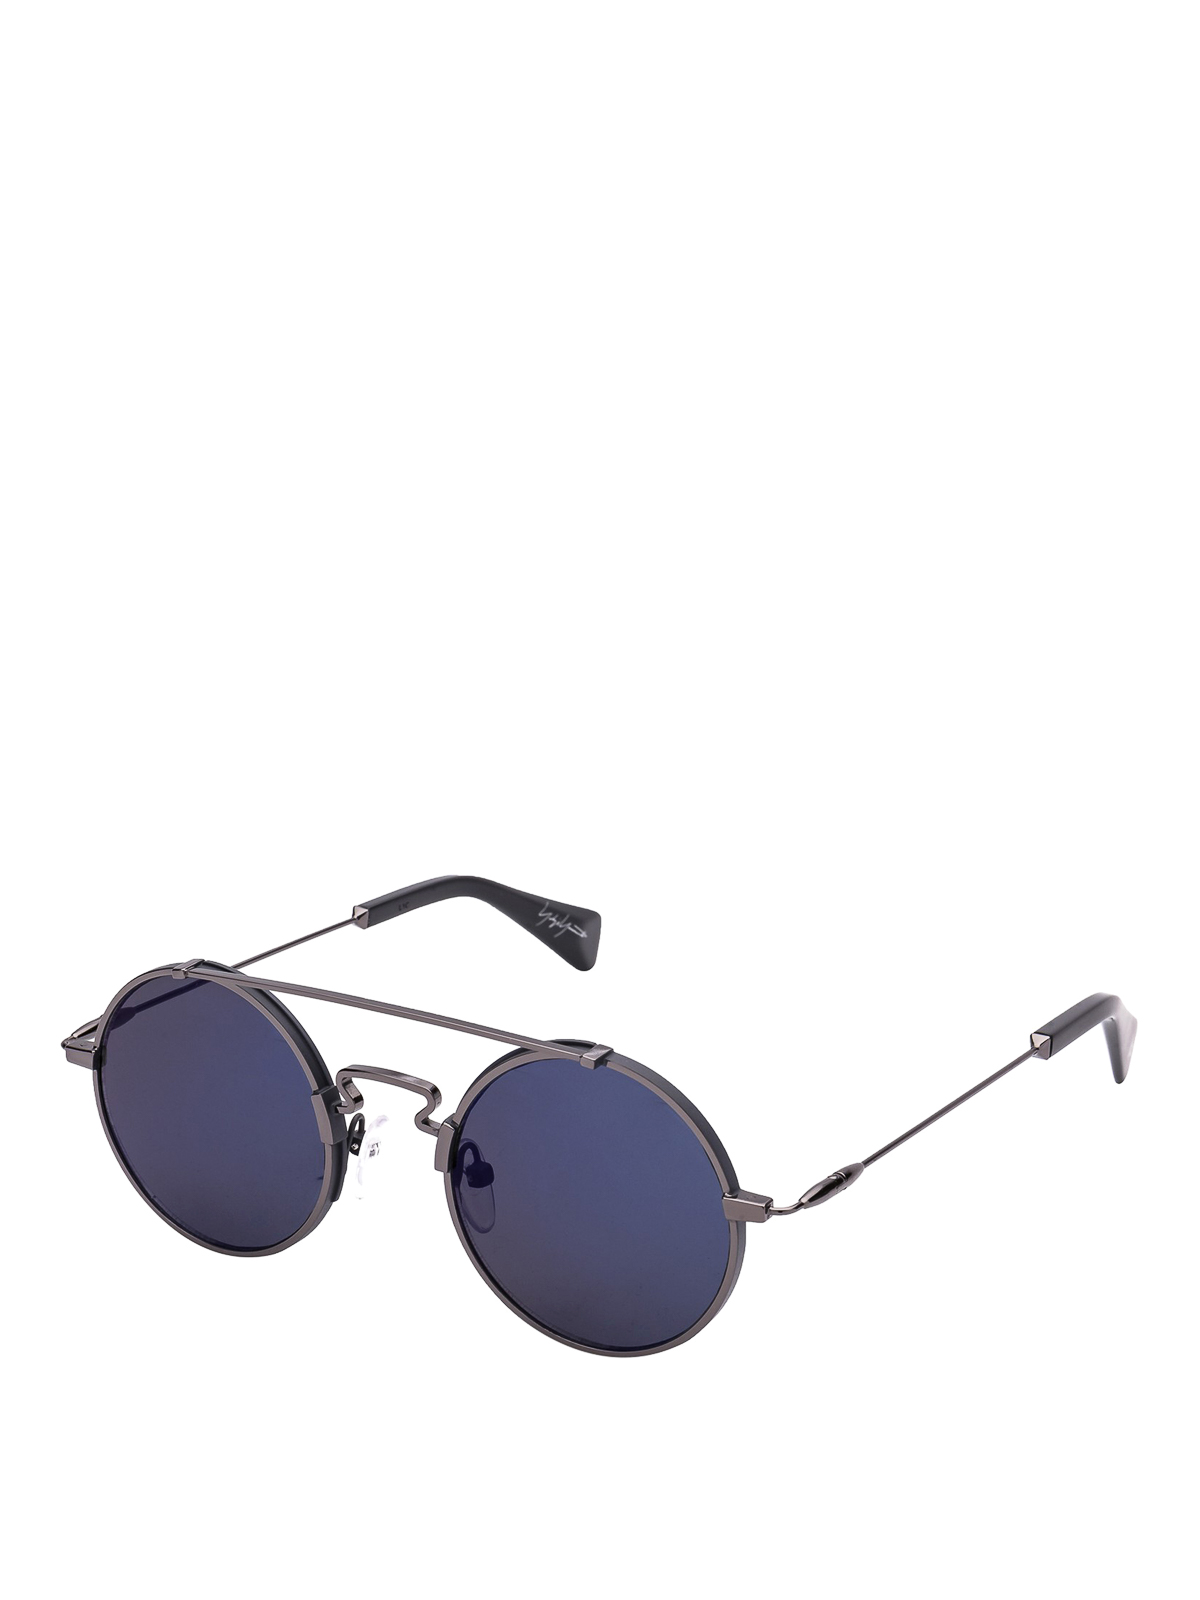 Yohji Yamamoto Yy7018 Round Sunglasses In Dark Grey